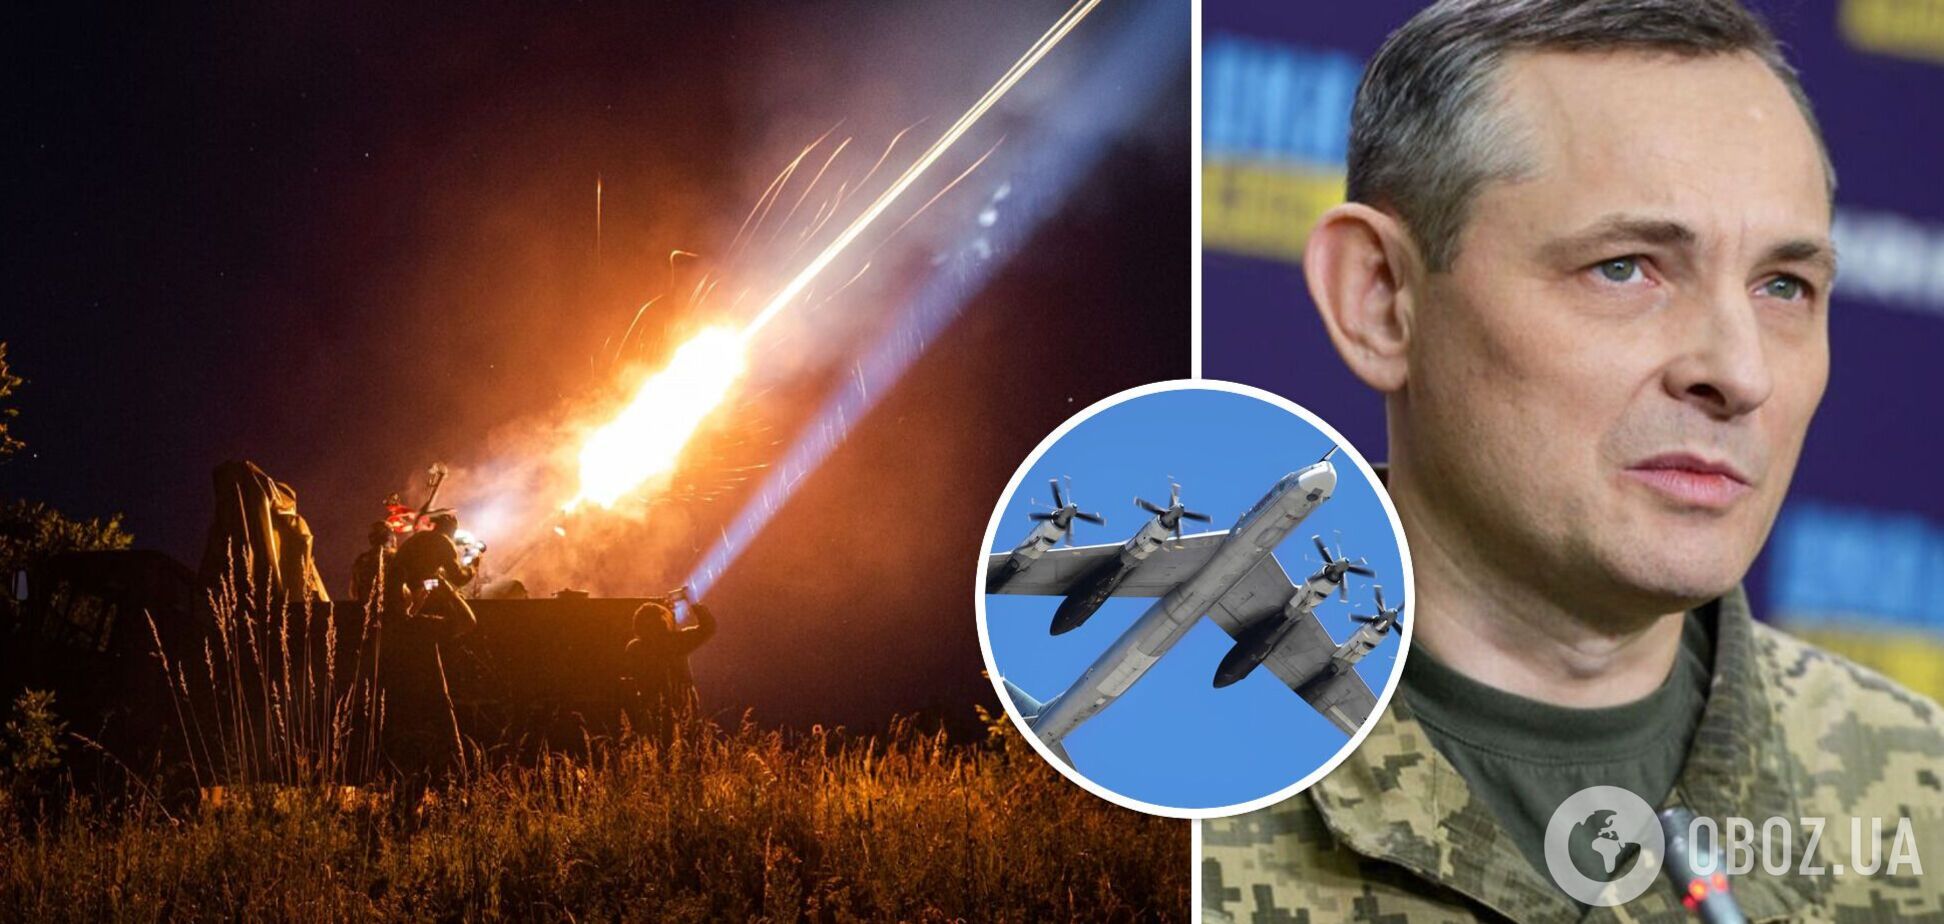 Есть несколько особенностей: Игнат прокомментировал последний массированный ракетный удар РФ по Украине